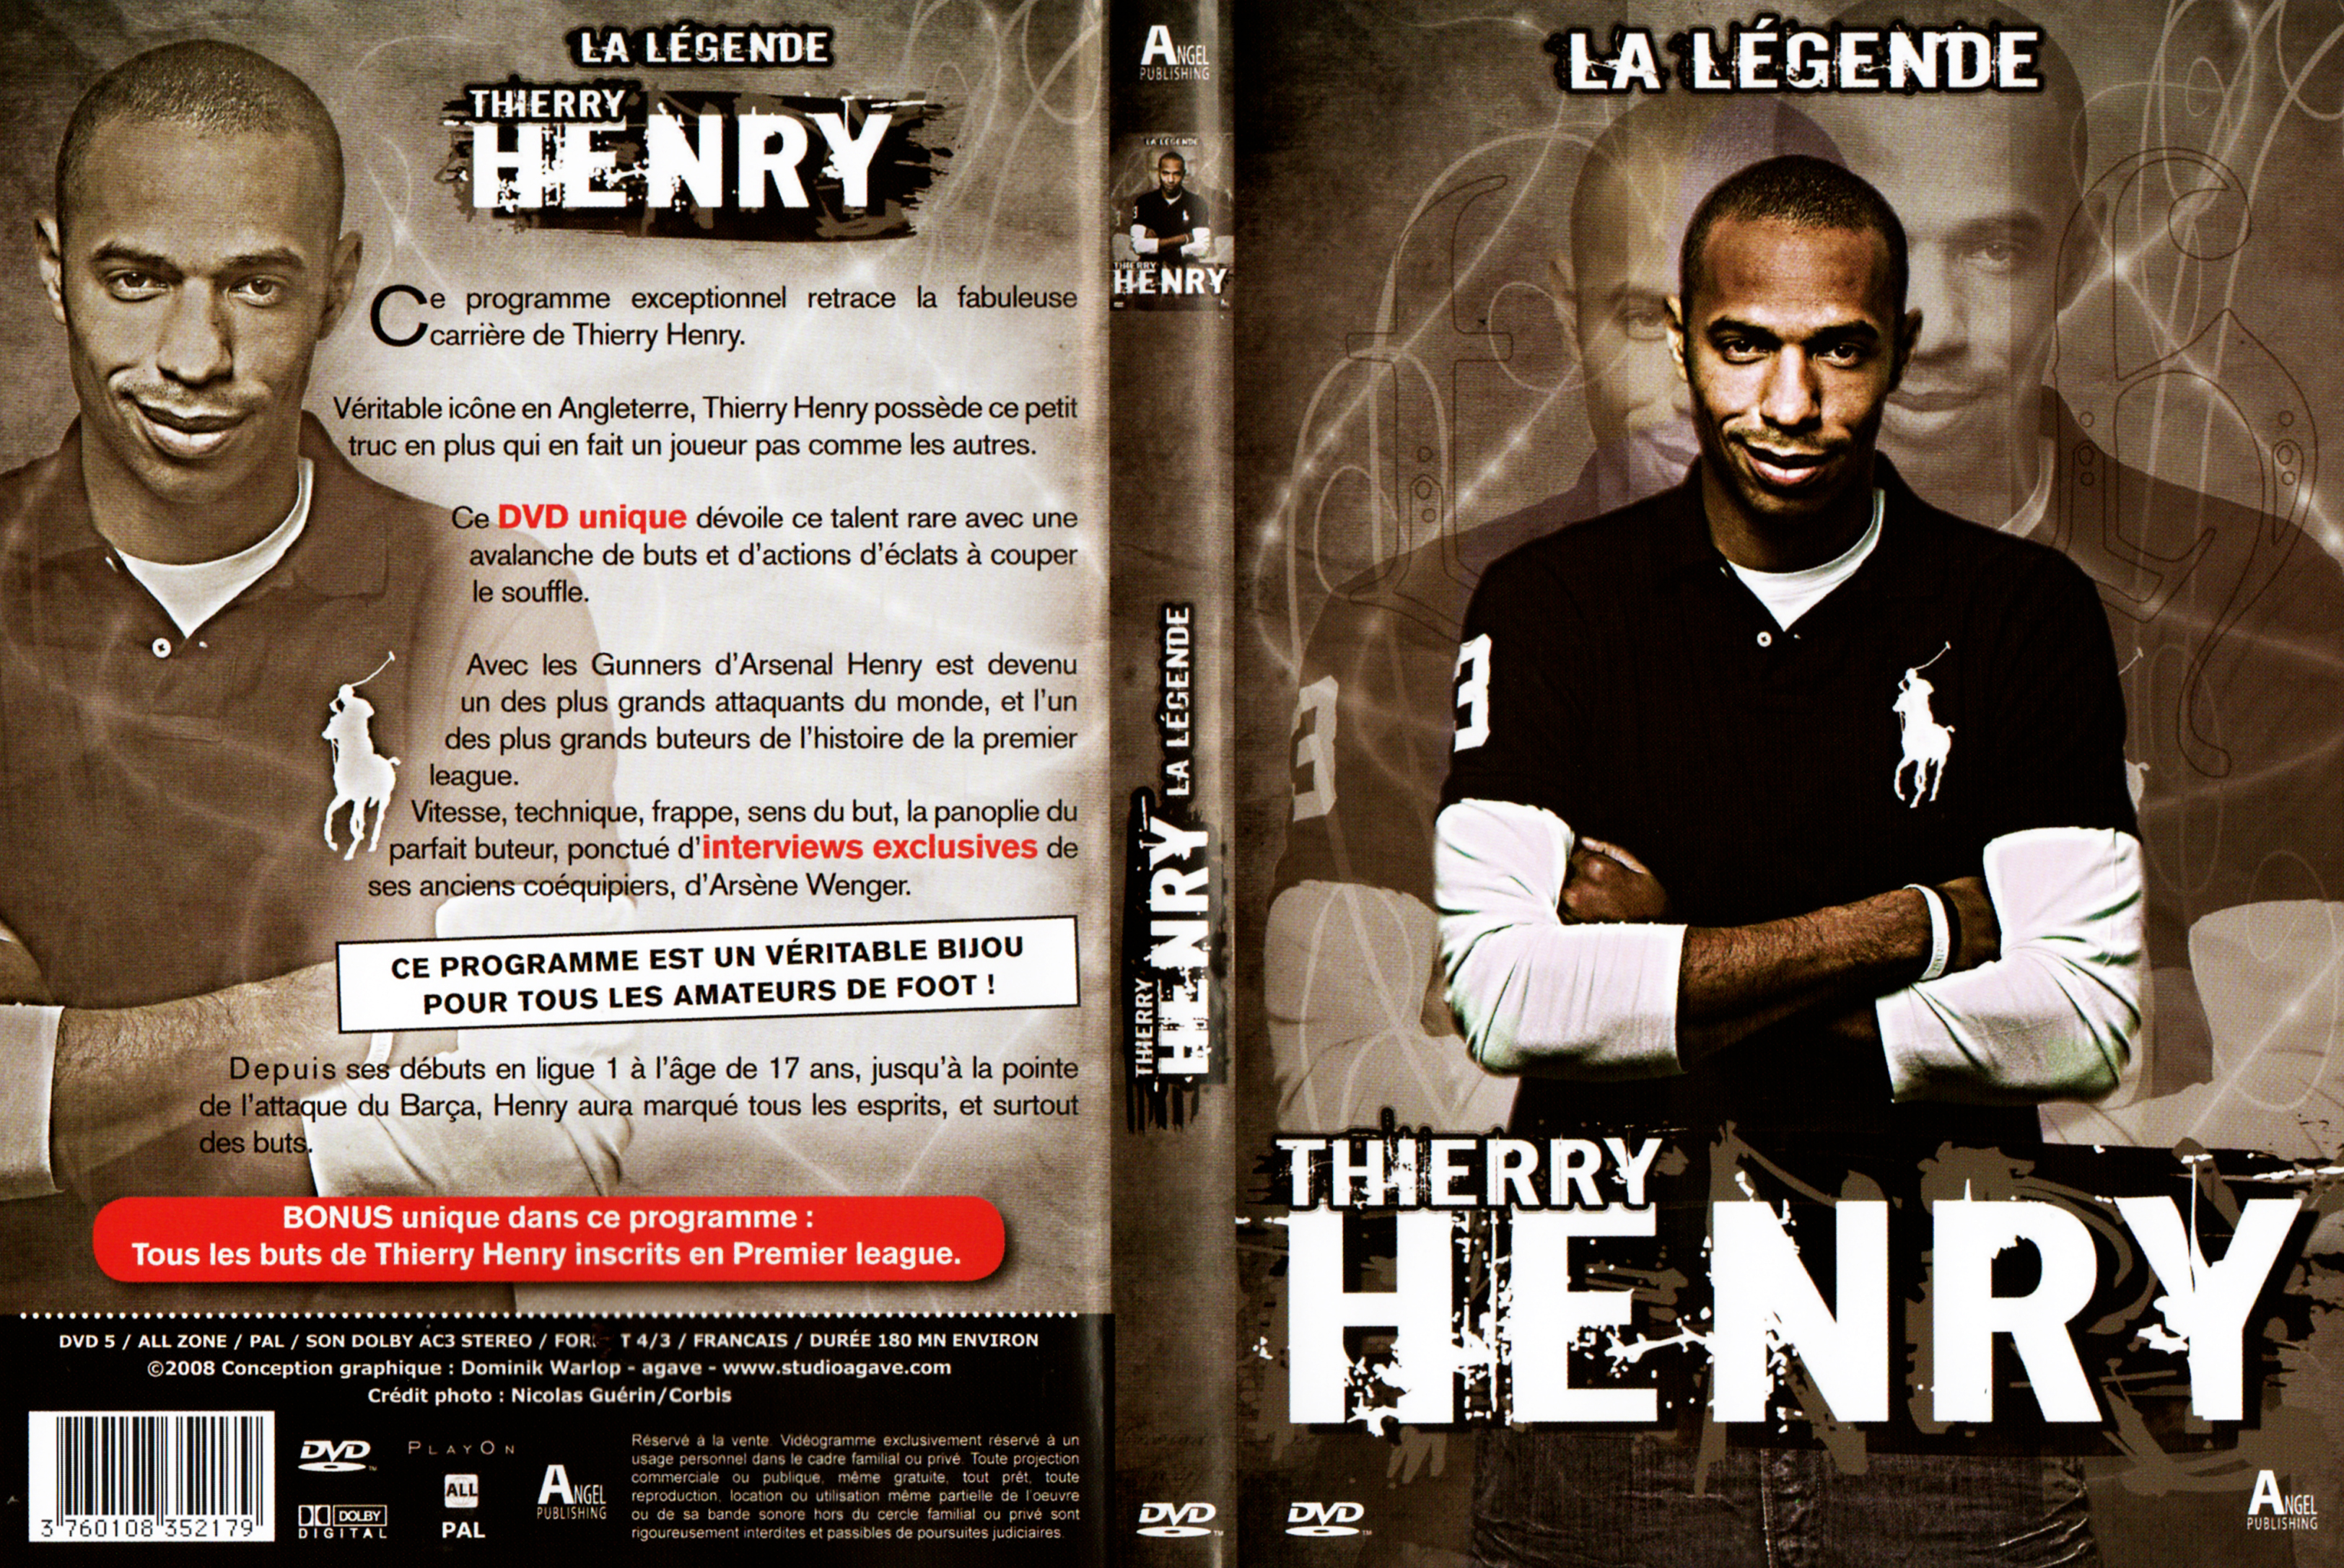 Jaquette DVD La lgende Thierry Henry